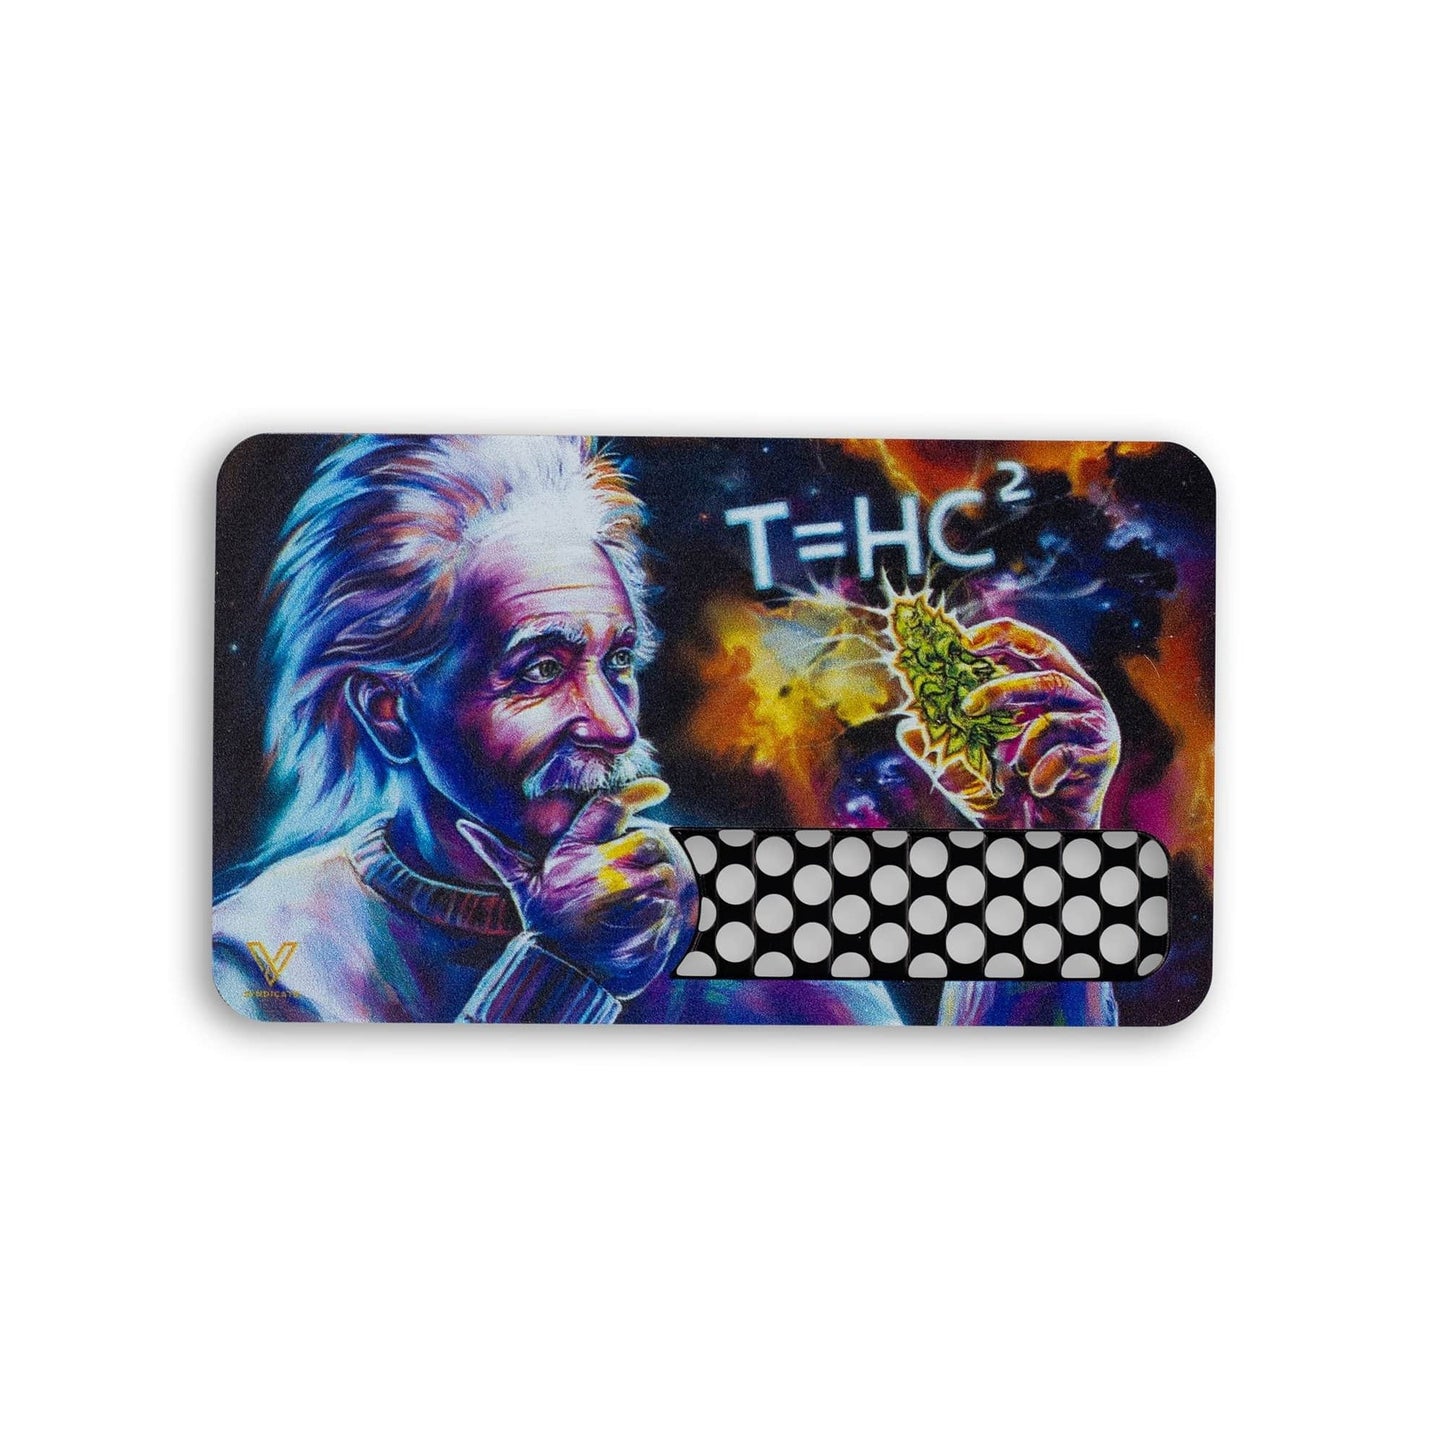 Daily High Club Accessory T=HC2 Einstein Black Hole V-Syndicate Grinder Card